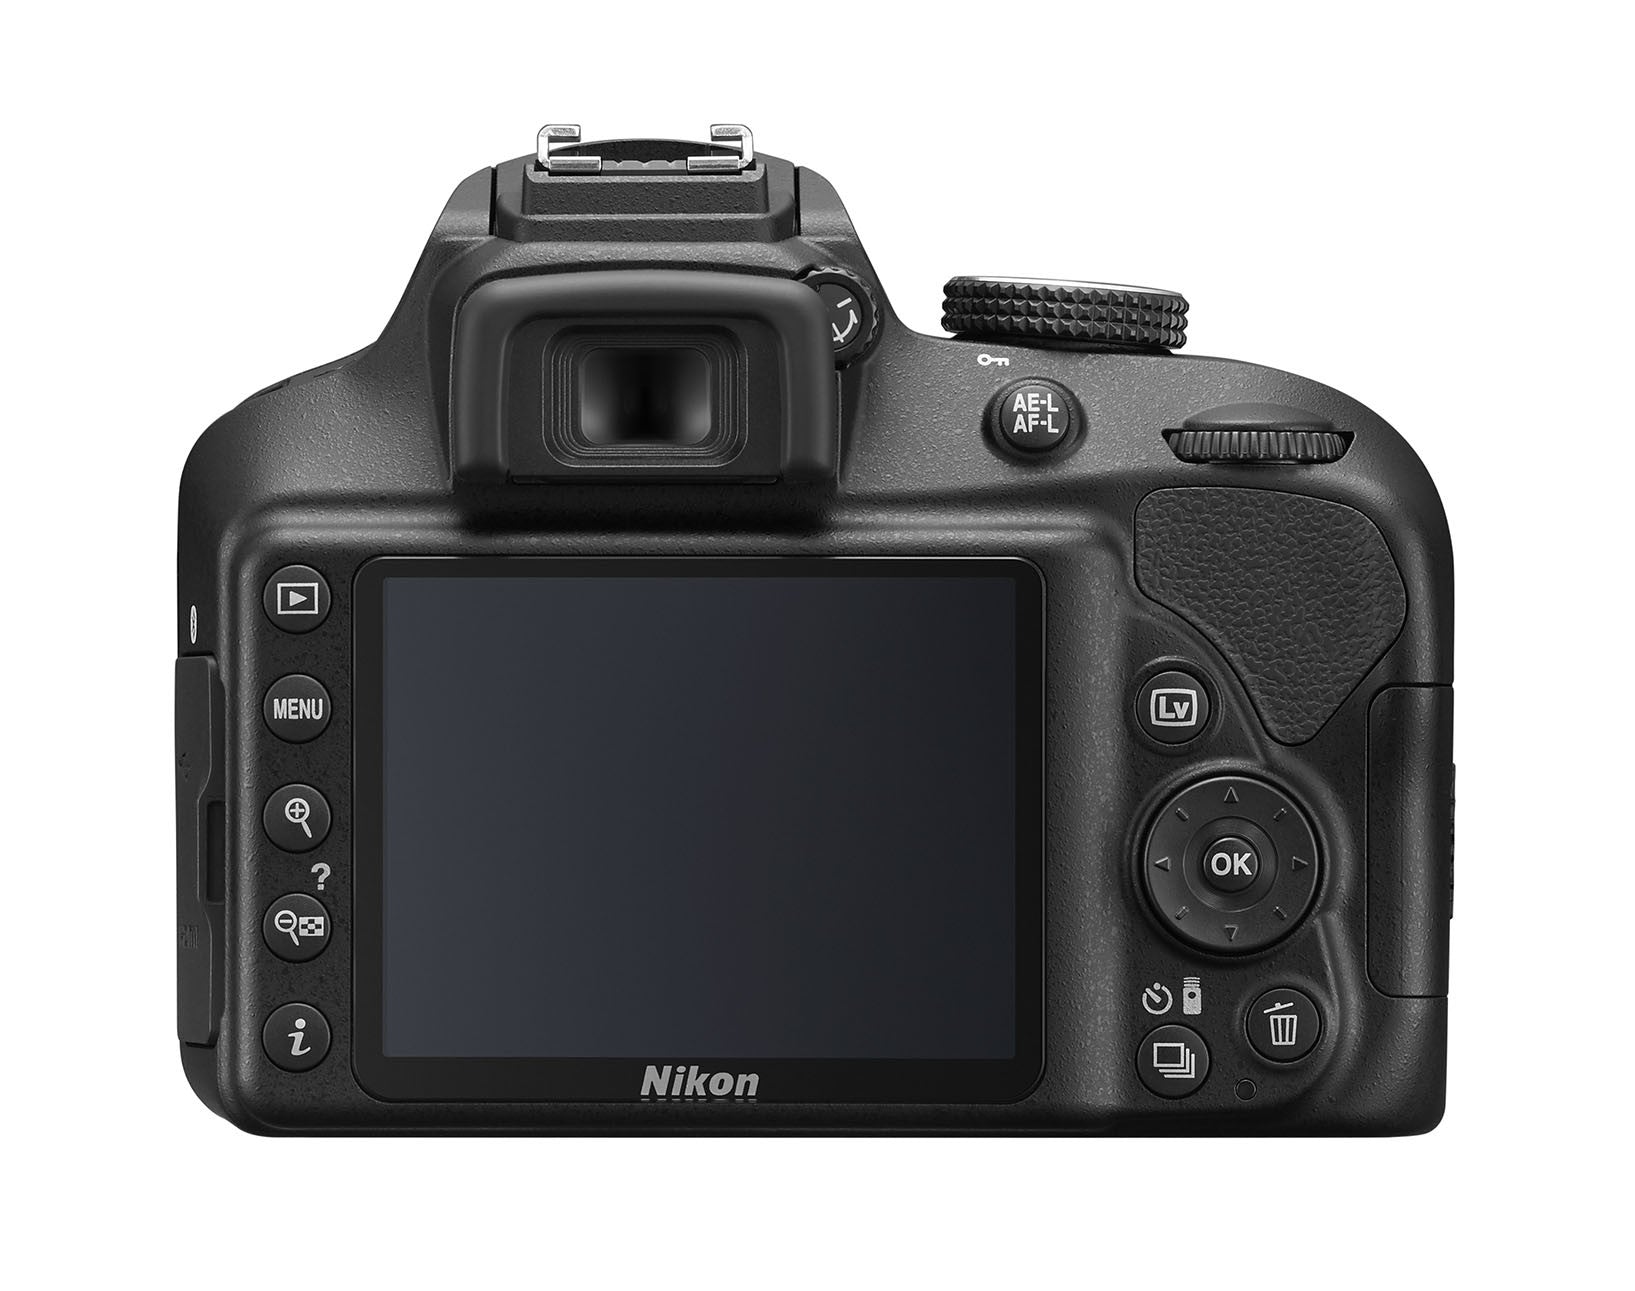 Nikon D3400 DX-format Digital SLR Kit w/ 18-55mm DX G VR Zoom Lens Black, camera dslr cameras, Nikon - Pictureline  - 8